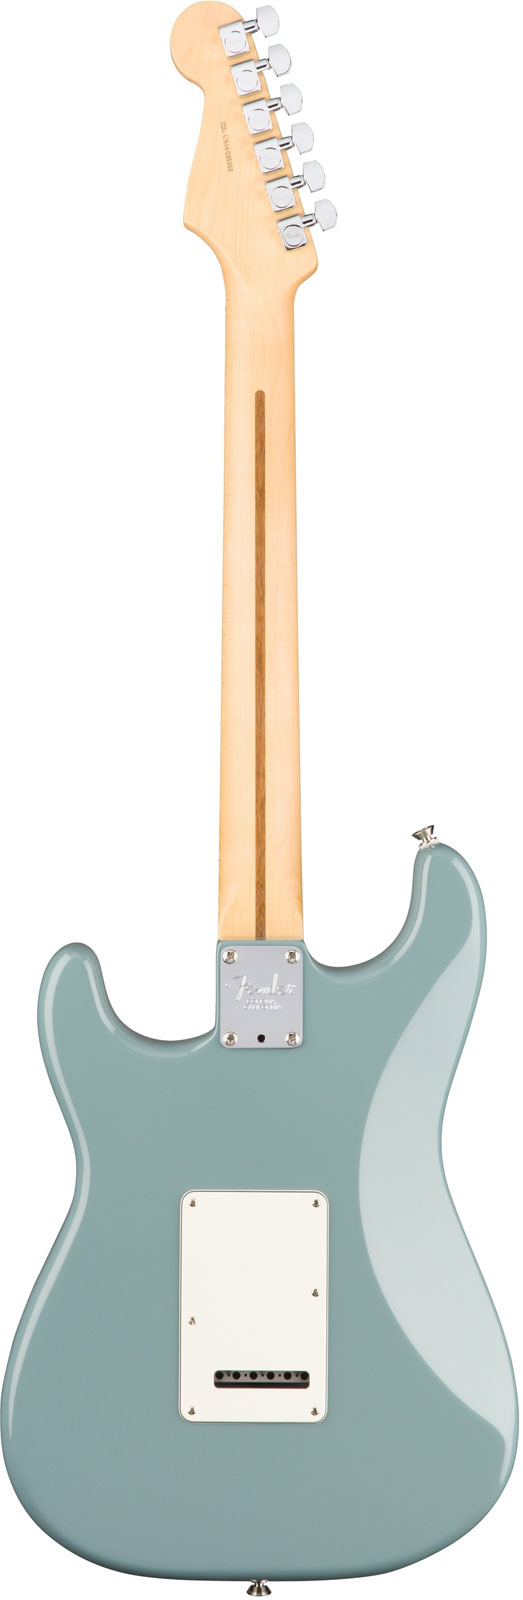 Fender Strat American Professional 2017 3s Usa Mn - Sonic Grey - Guitarra eléctrica con forma de str. - Variation 2